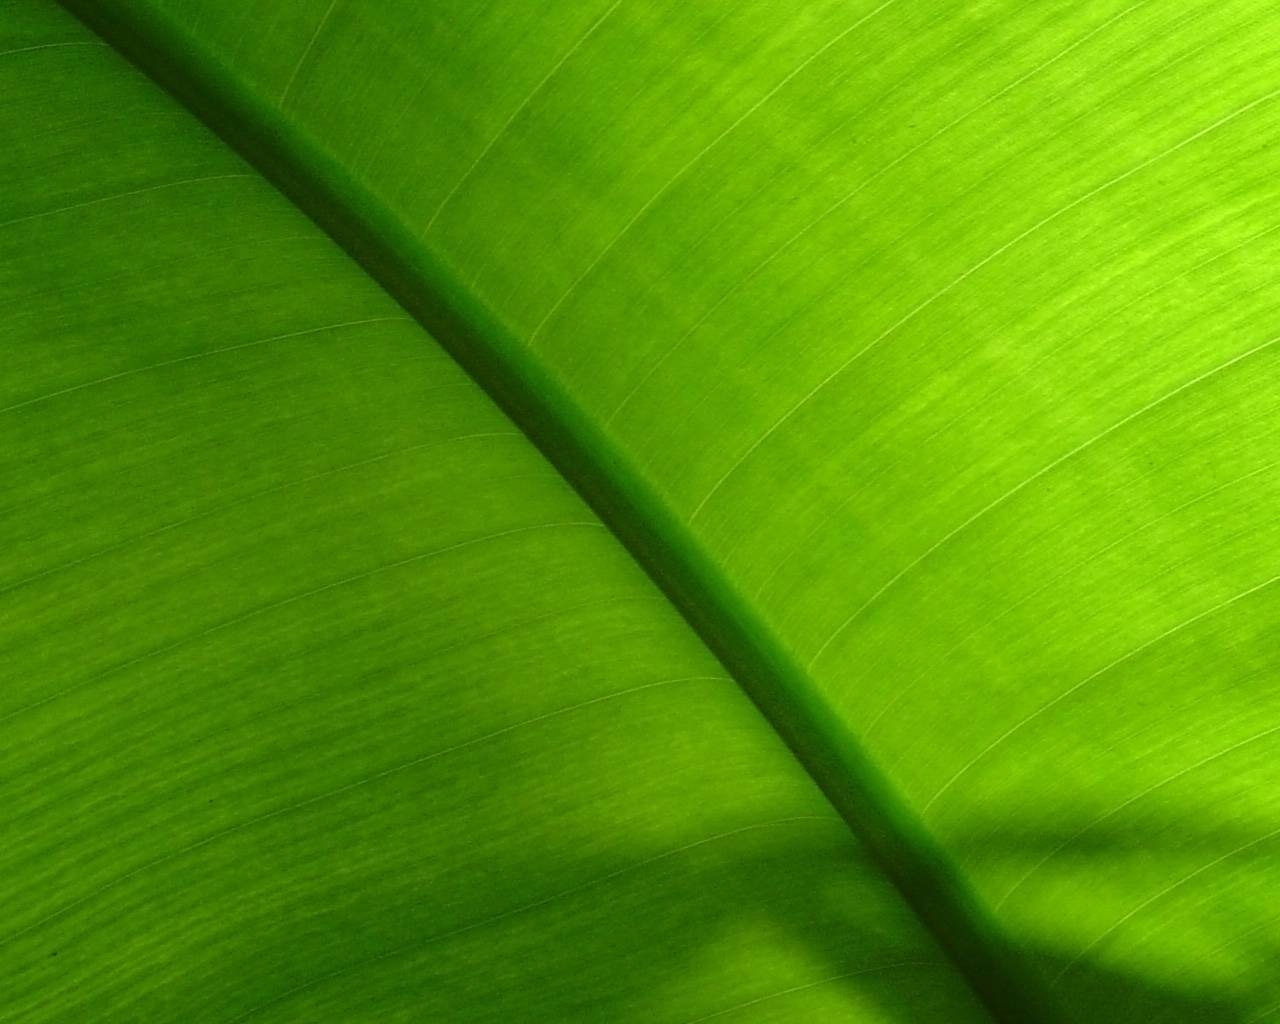 Fond d'ecran Zoom vert chlorophylle